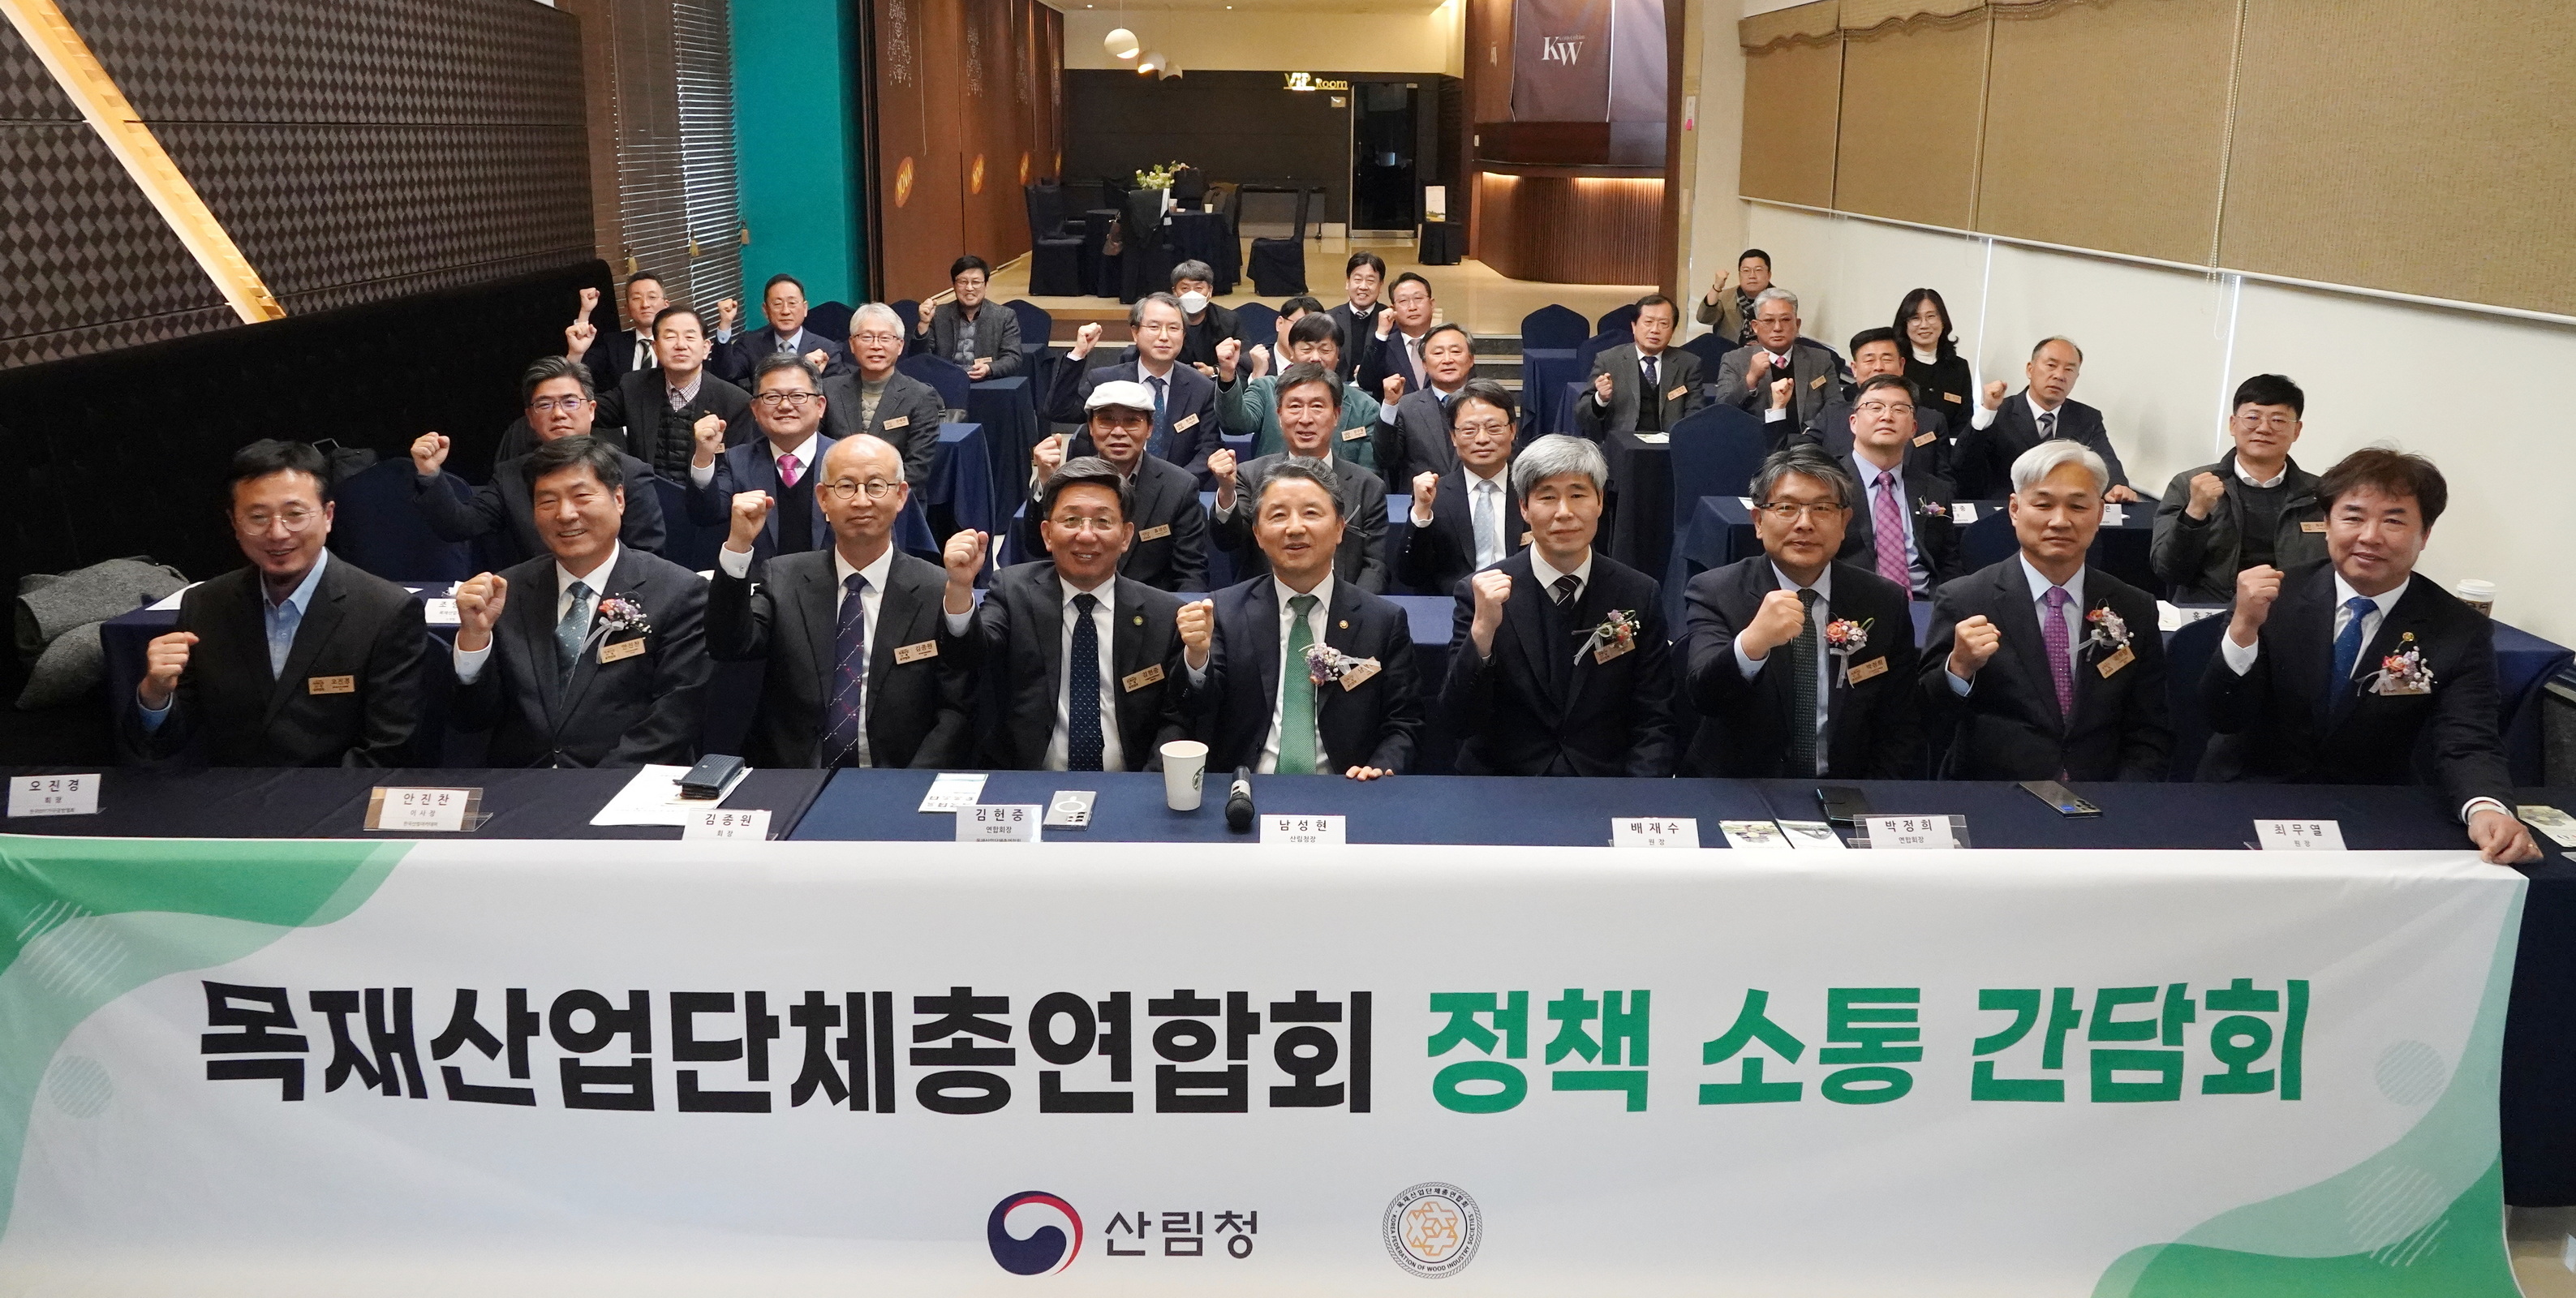 목재산업단체총연합회 소통간담회 개최 